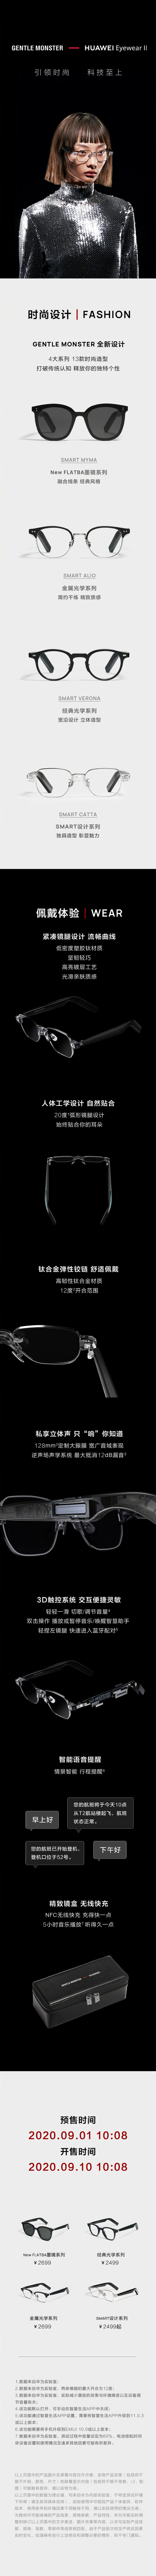 Huawei X GENTLE MONSTER Eyewear II